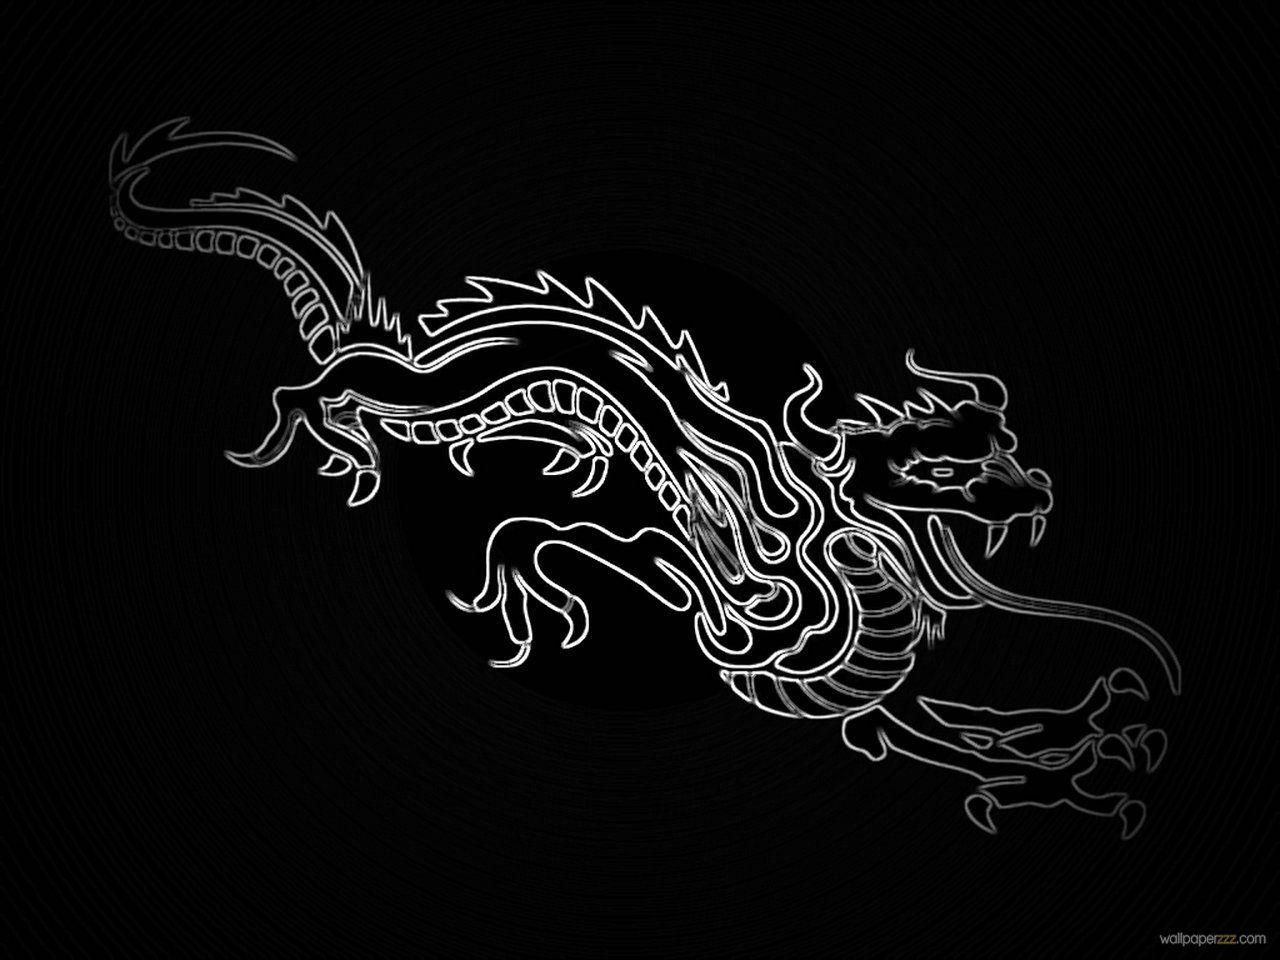 Chinese Dragon Wallpaper Deskx960 px